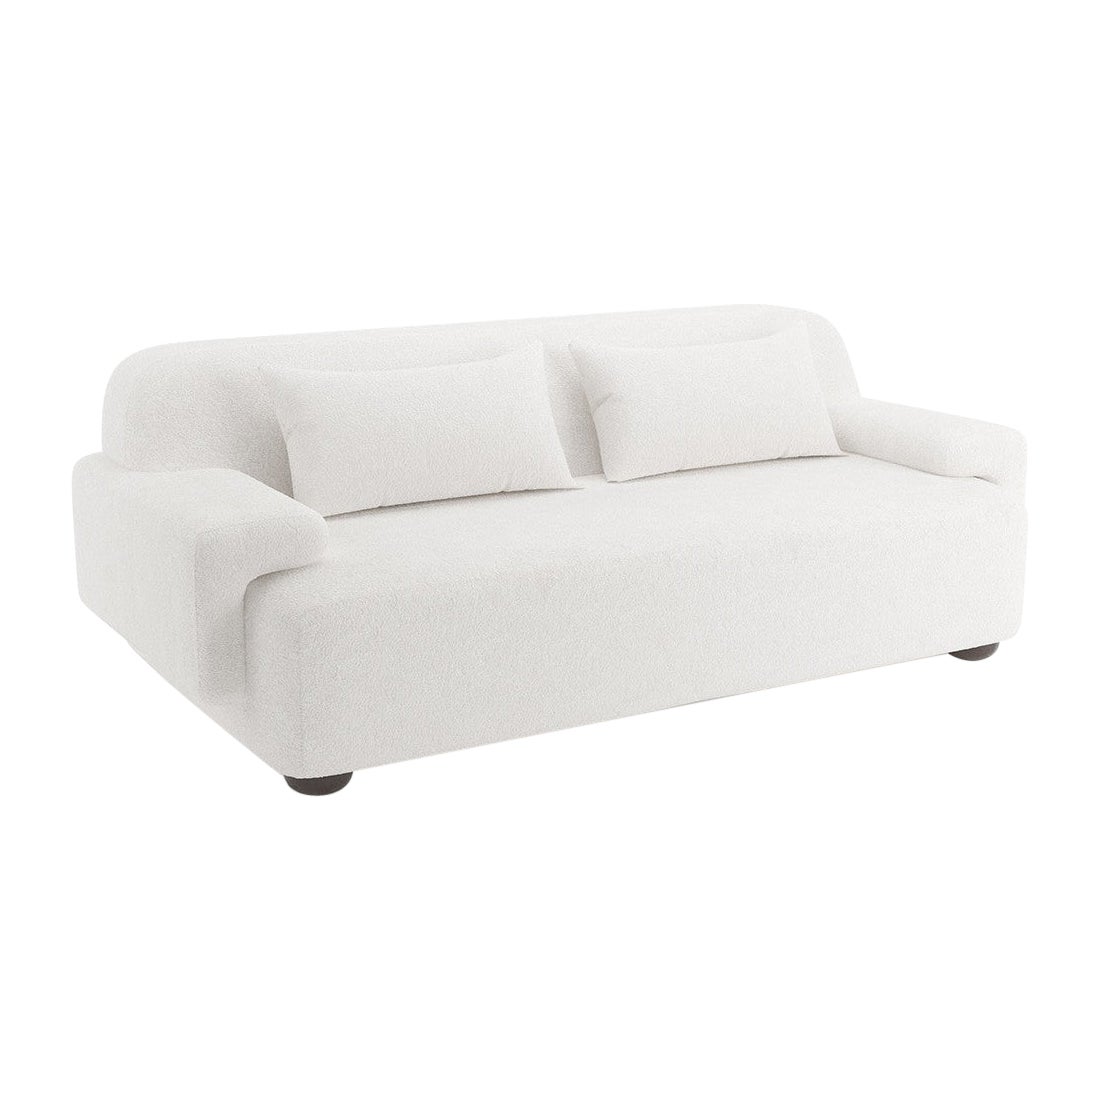 Popus Editions Lena 2.5 Seater Sofa in White Venice Chenille Velvet Upholstery For Sale